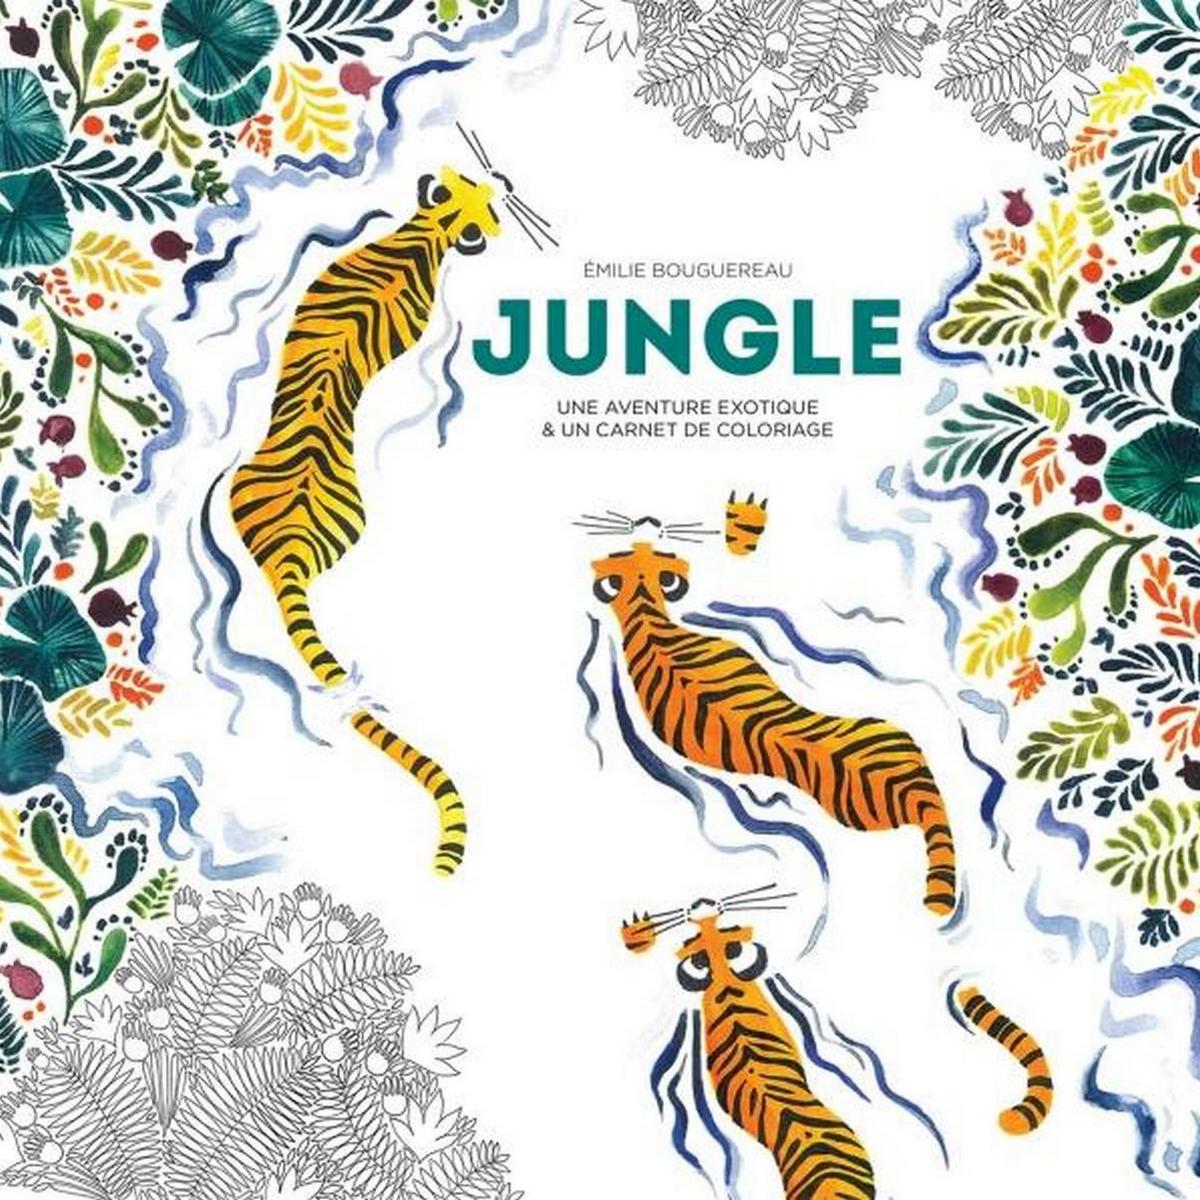 marabout edition livre coloriage jungle une idee cadeau chez ugo et lea